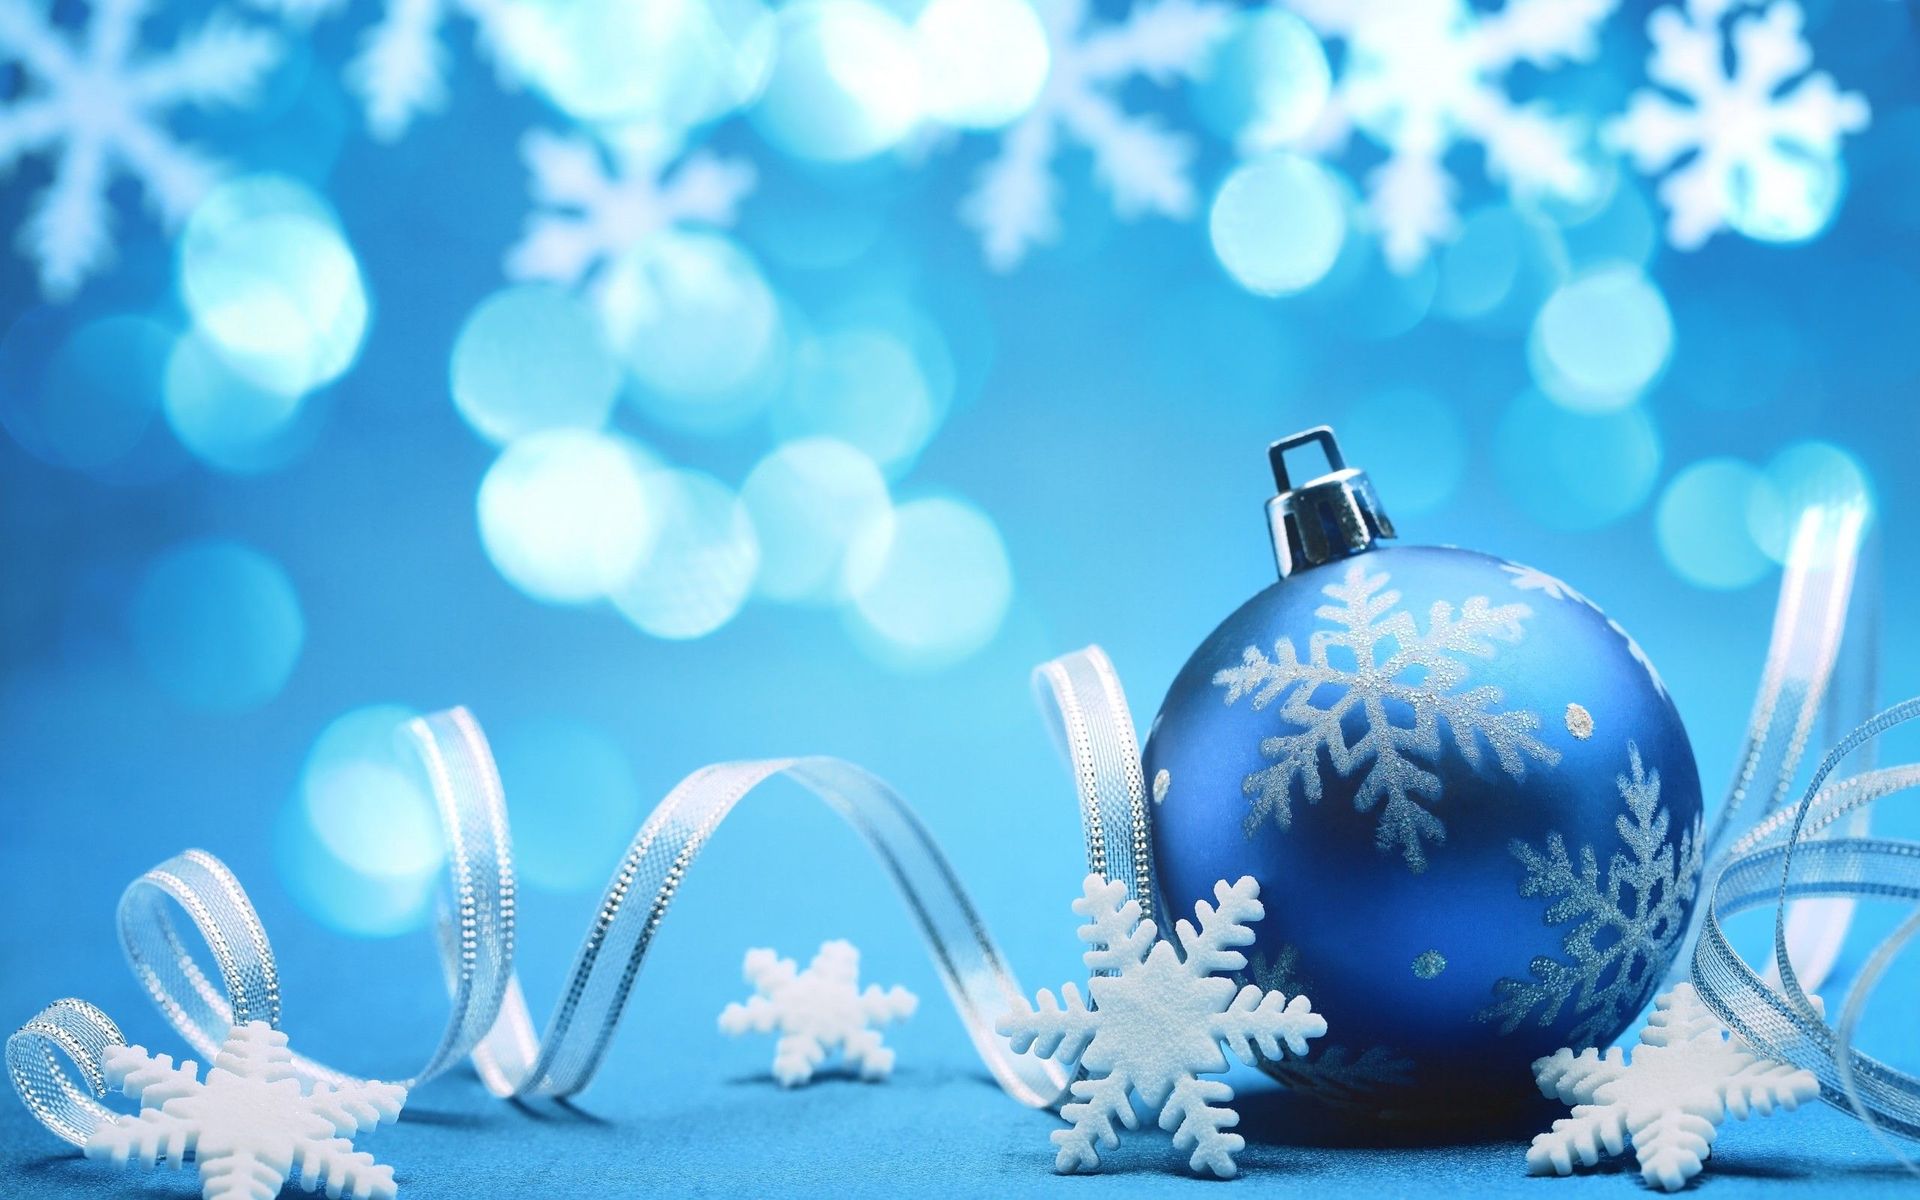 navidad fondos de pantalla hd widescreen,azul,decoración navideña,cielo,decoración navideña,copo de nieve